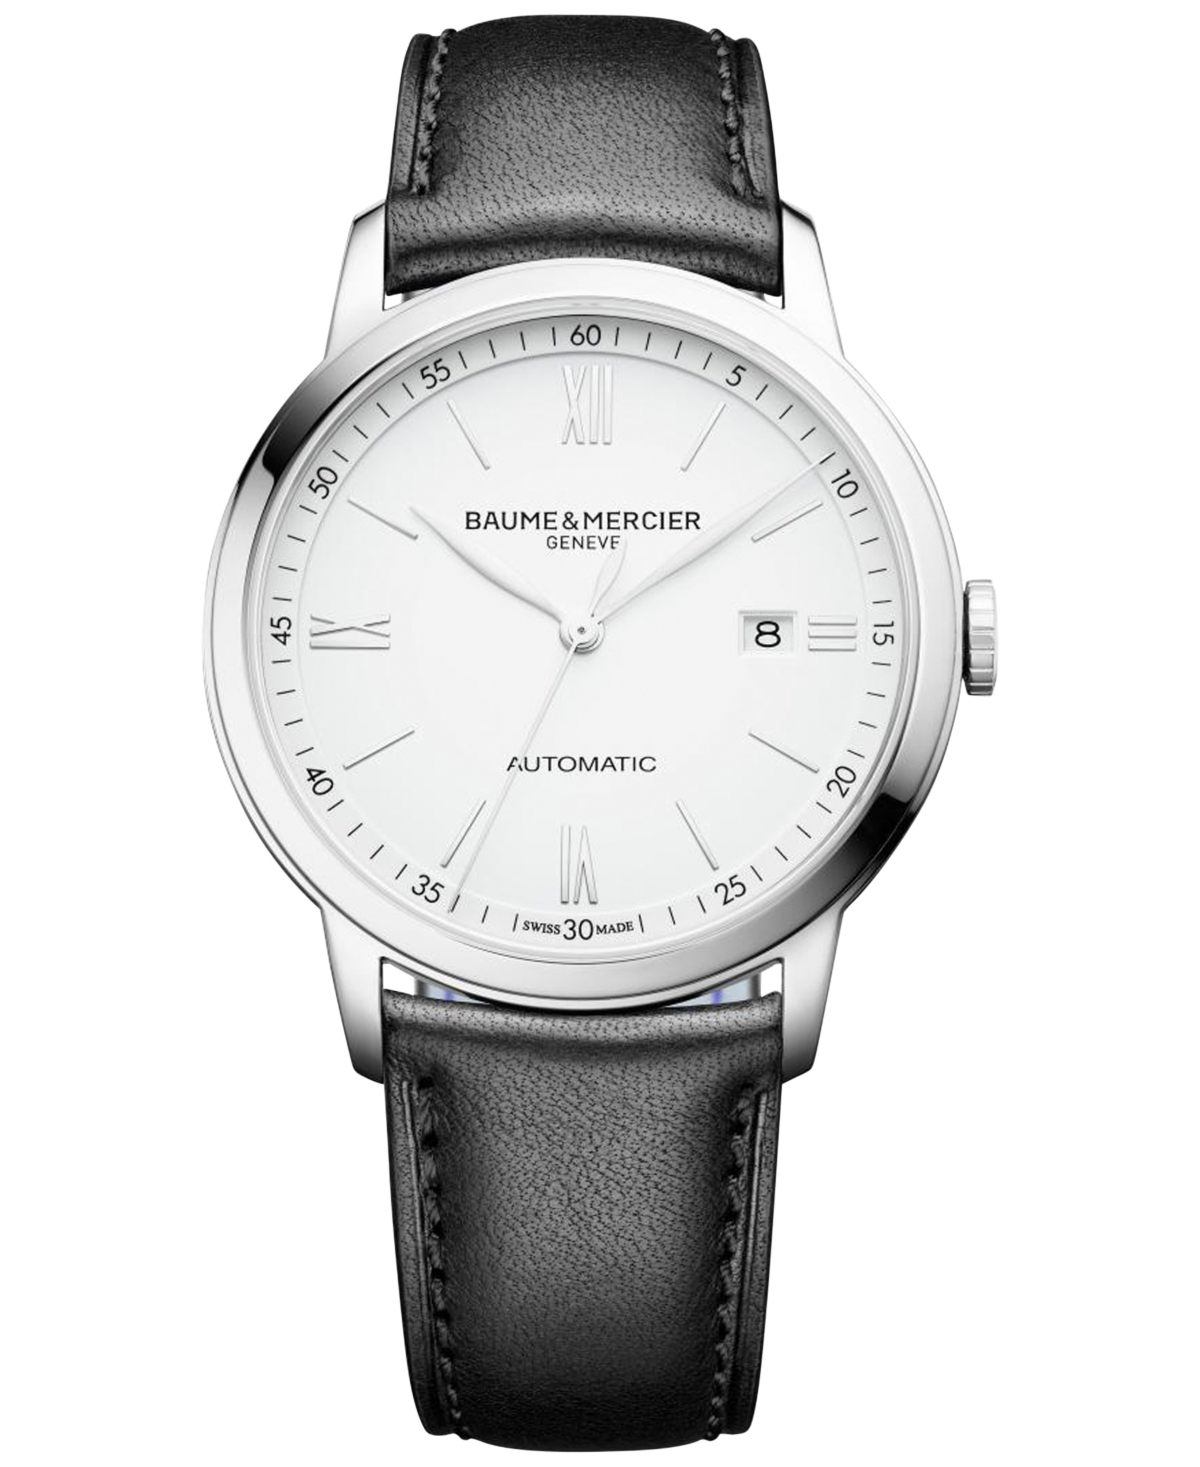 Shop Baume & Mercier Men's Swiss Automatic Classima Black Leather Strap Watch 42mm M0a10332